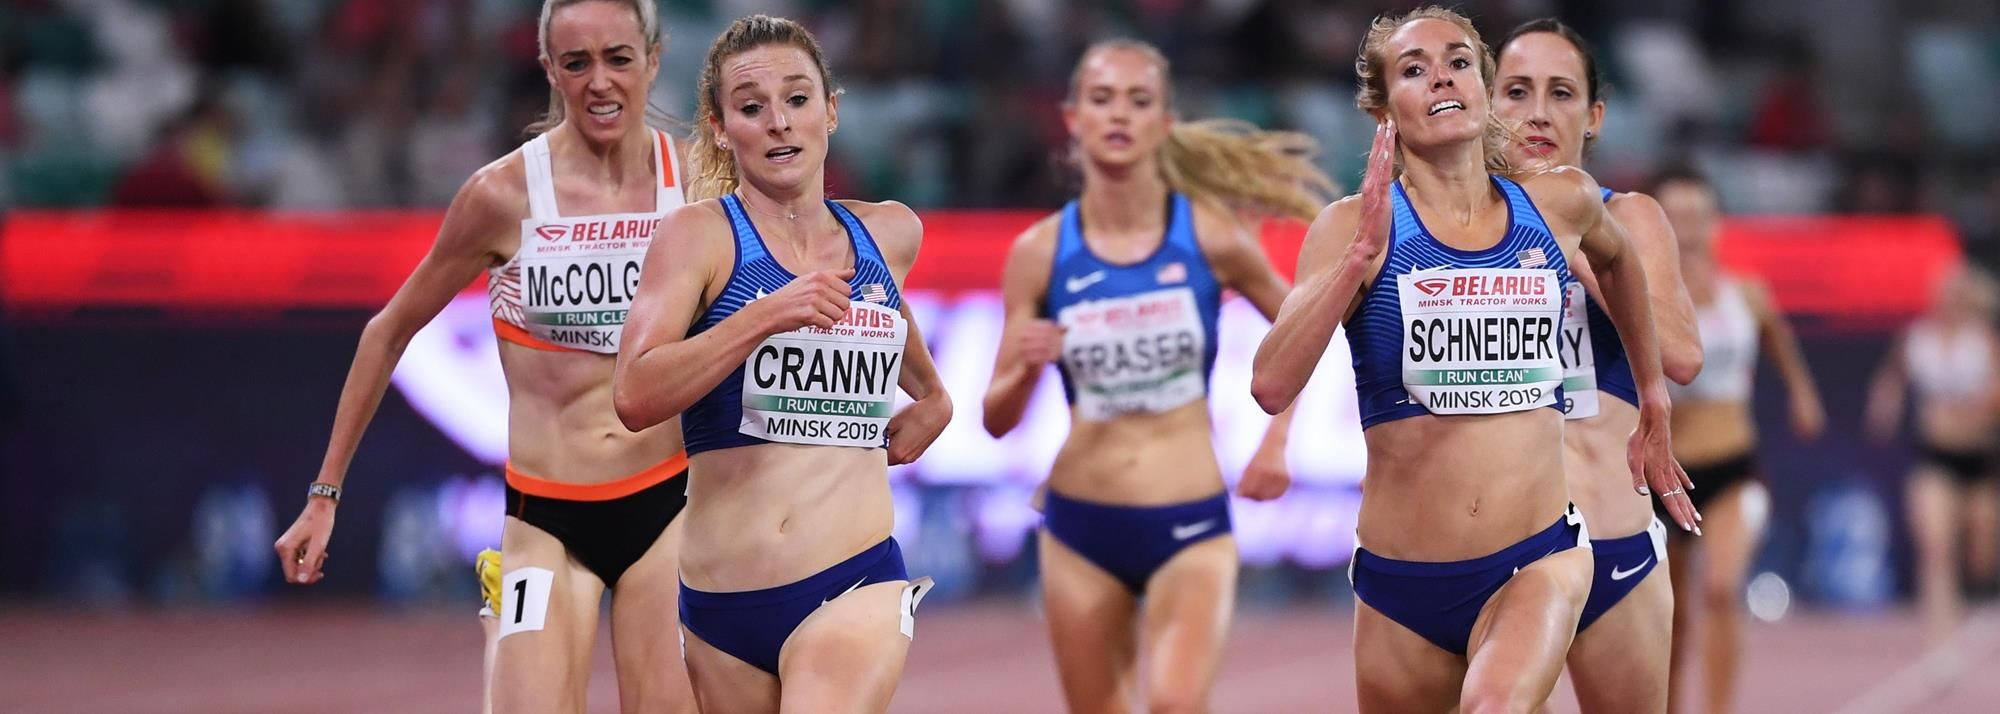 Elise CRANNY | Profile | World Athletics